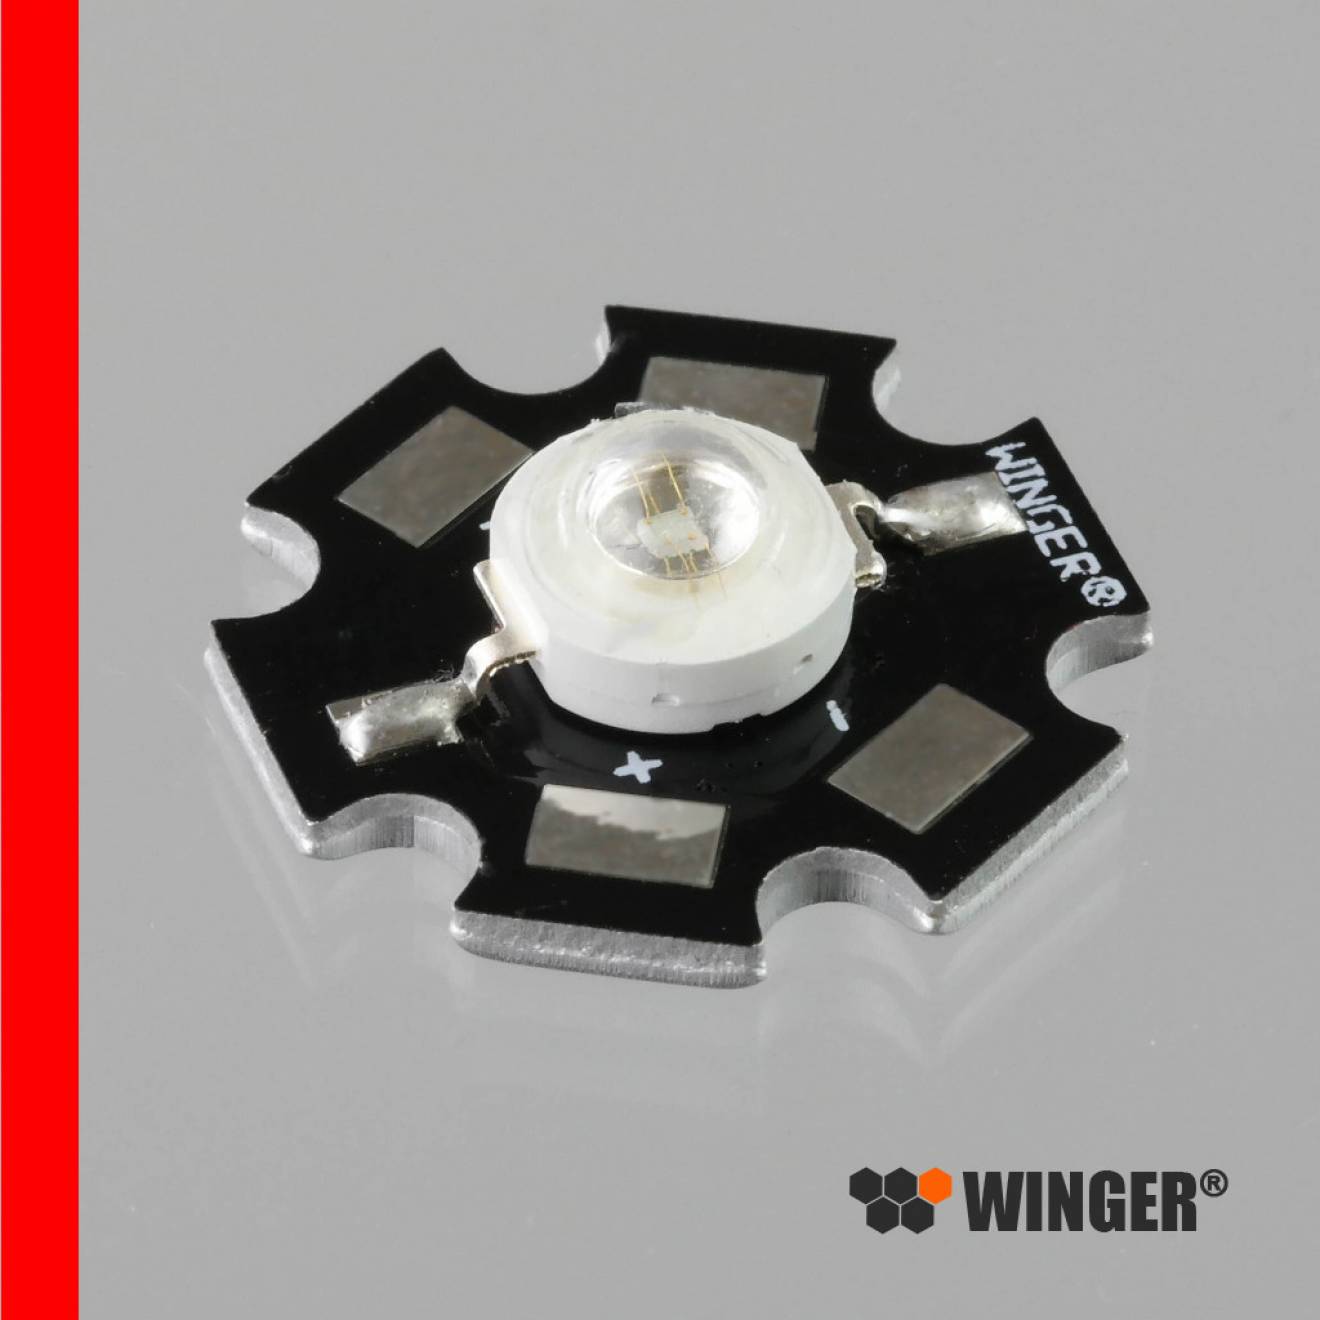 WINGER® WEPRD3-S1 Power LED Star rot (625nm) 3W - 100lm